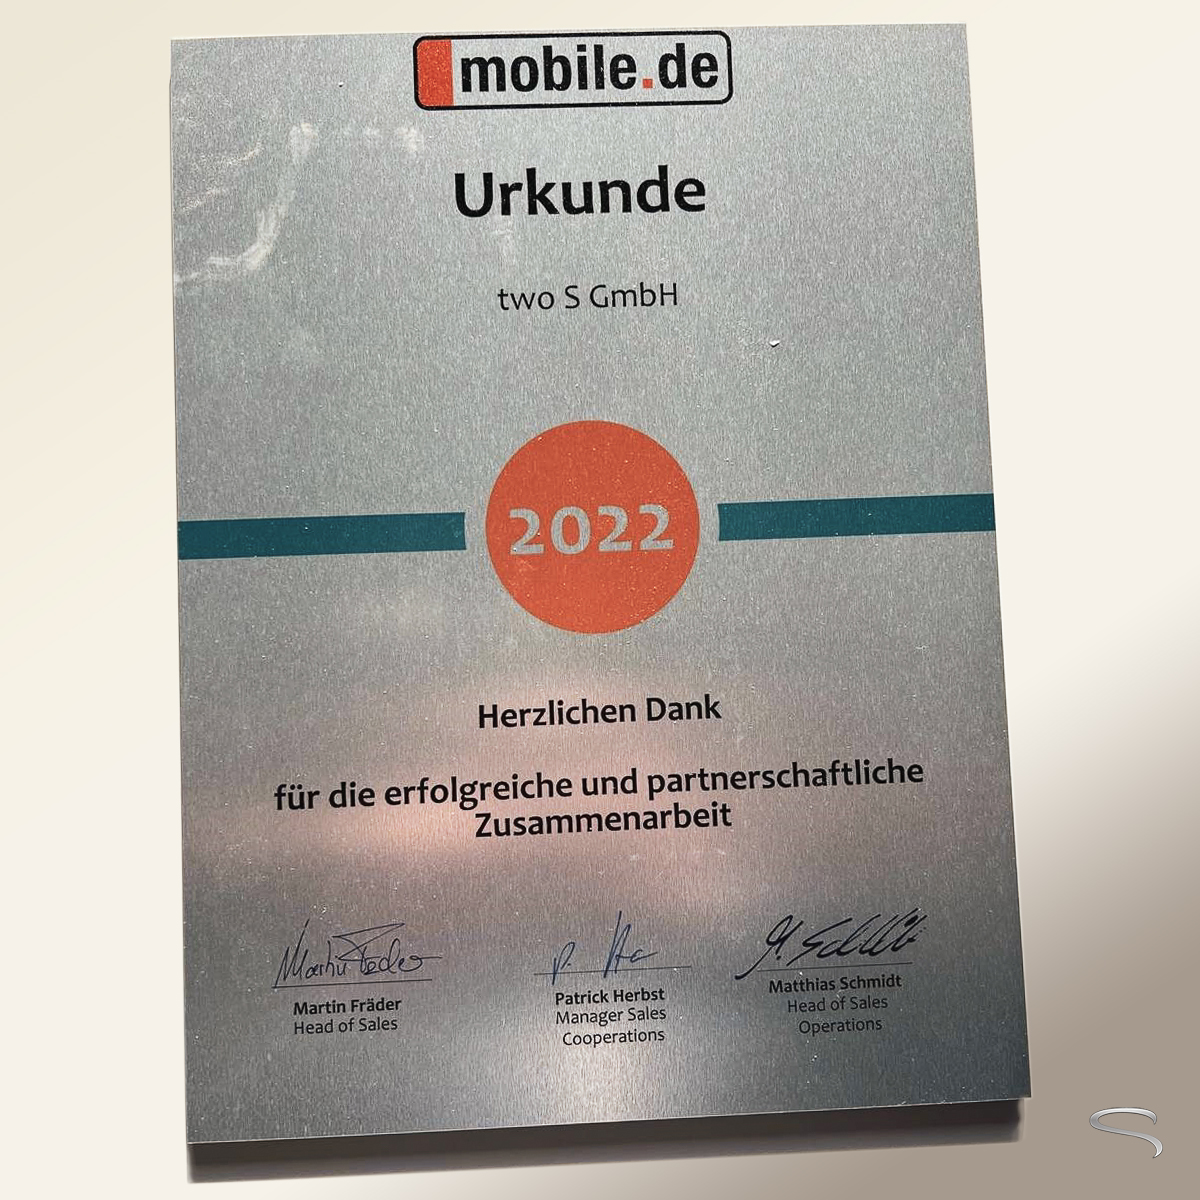 Eine Urkunde für erfolgreiche Zusammenarbeit von mobile.de